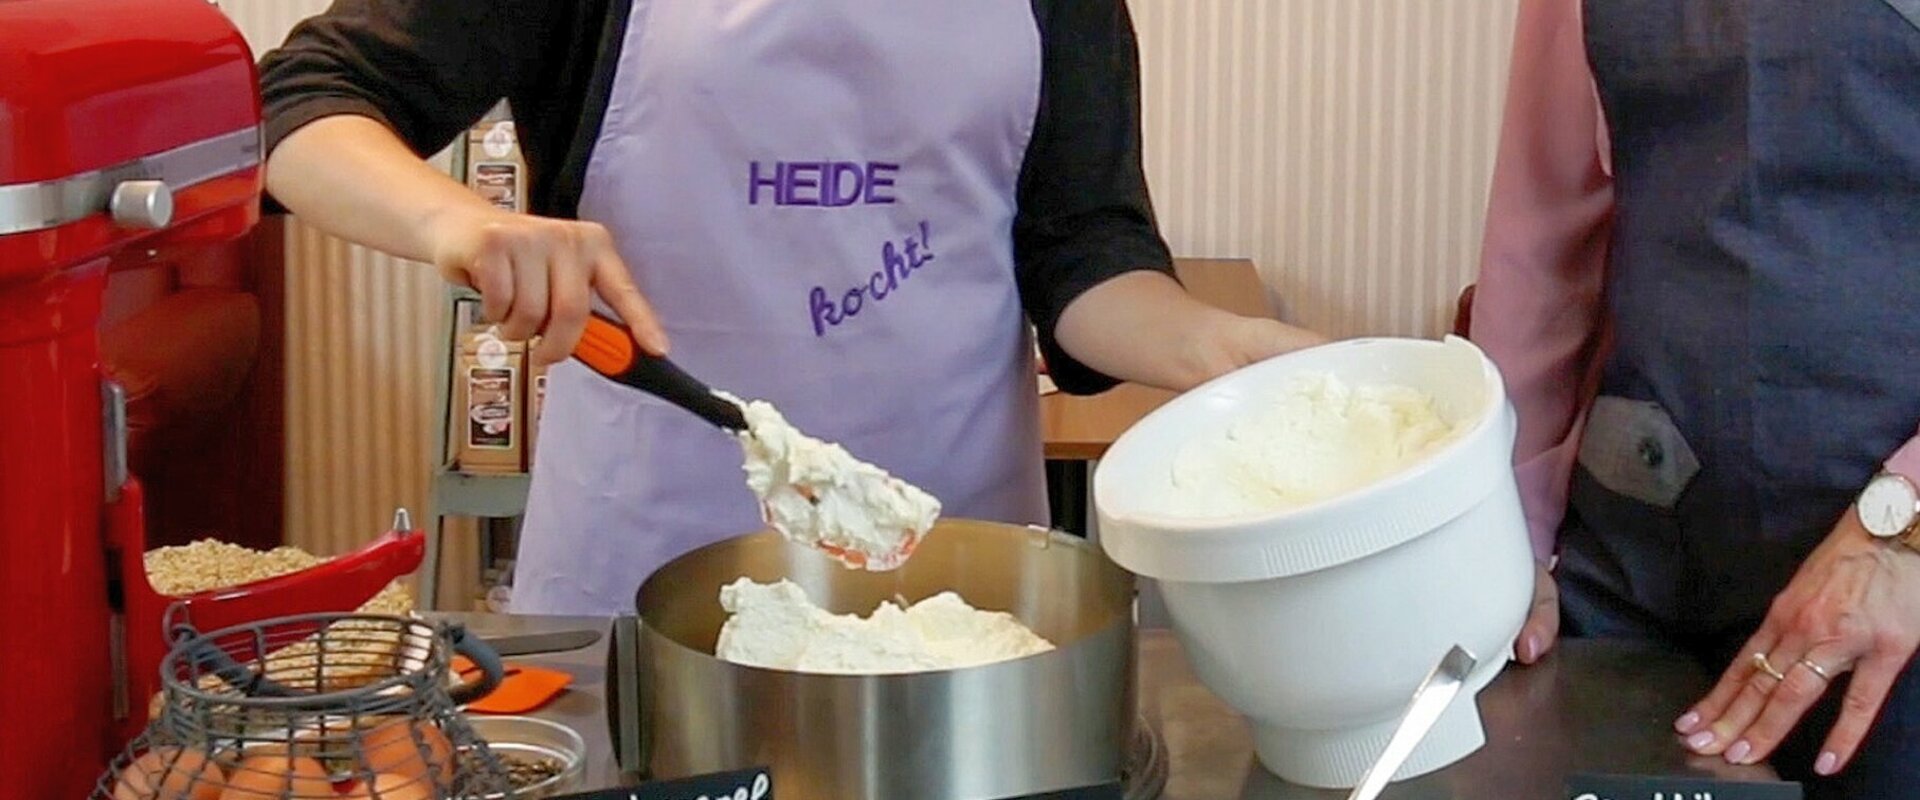 Zwei junge Frauen füllen geschlagene Buttercreme in eine runde Kuchenform. Die links hinter dem Tisch mit den Backzutaten stehende Frau trägt eine lila Schürze mit der Aufschrift "Heide kocht".